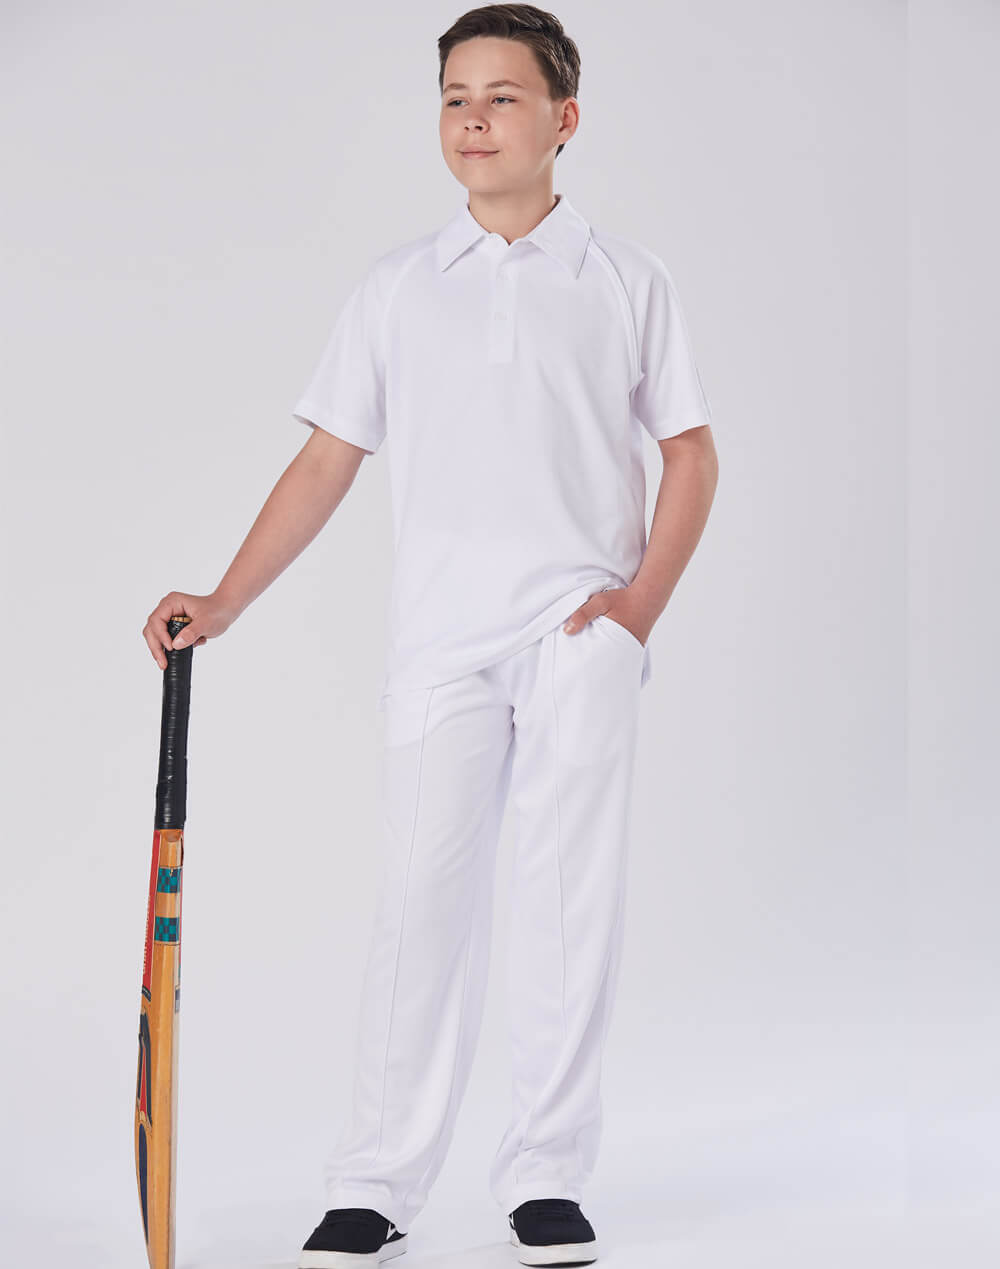 PS29K Cricket Polo Short Sleeve Kids